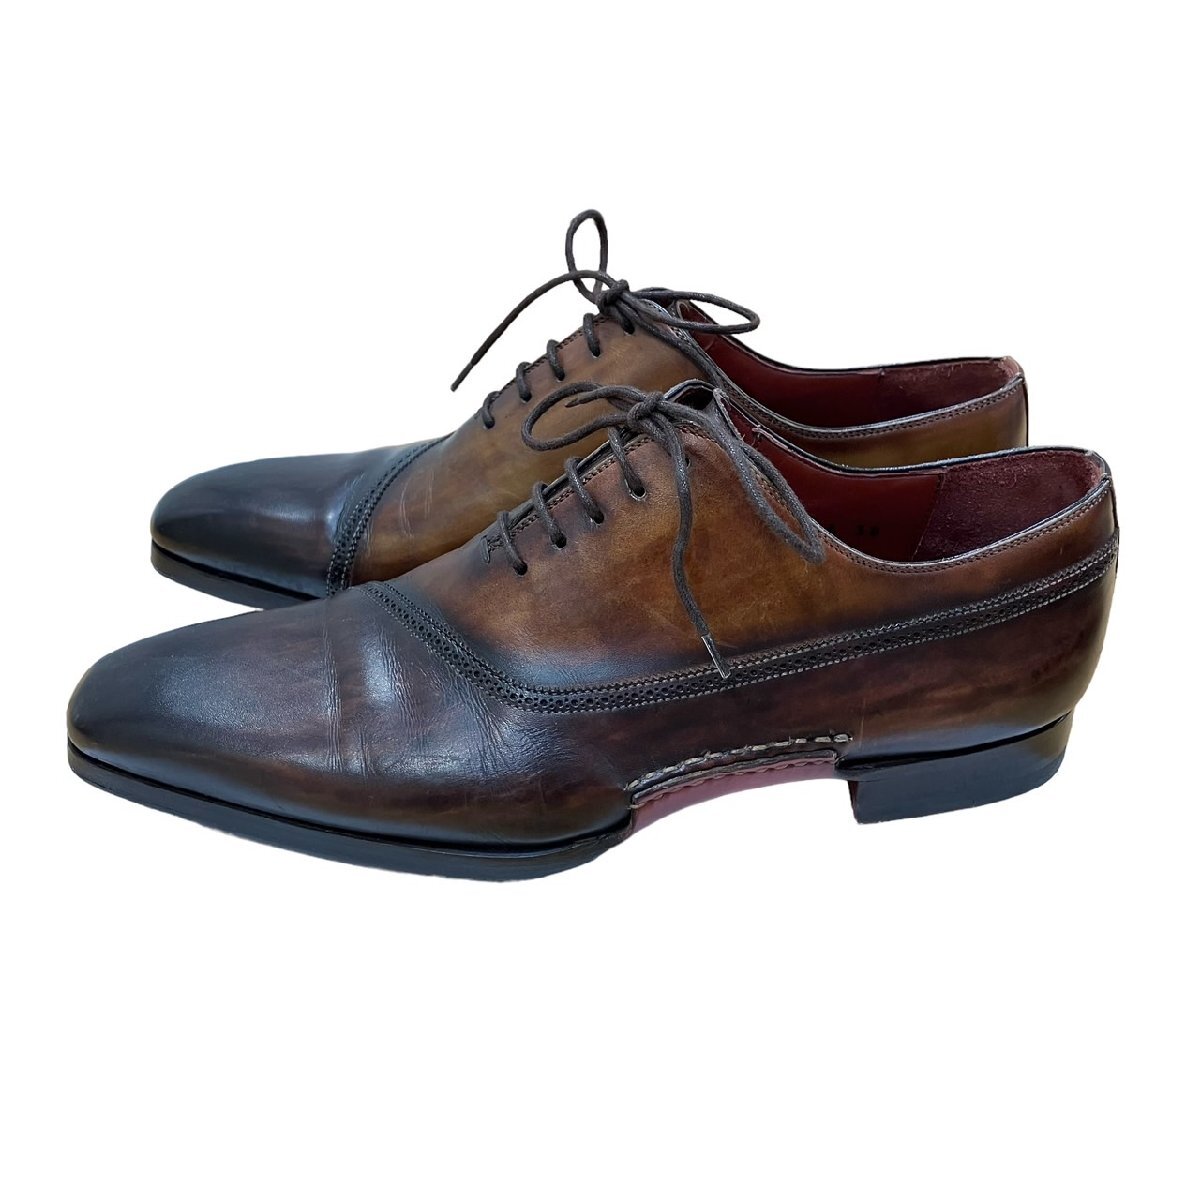 マグナーニ MAGNANNI オパンカ ホールカット ブラウン 革靴 スペイン製 18735 38 箱・保存袋付_画像5